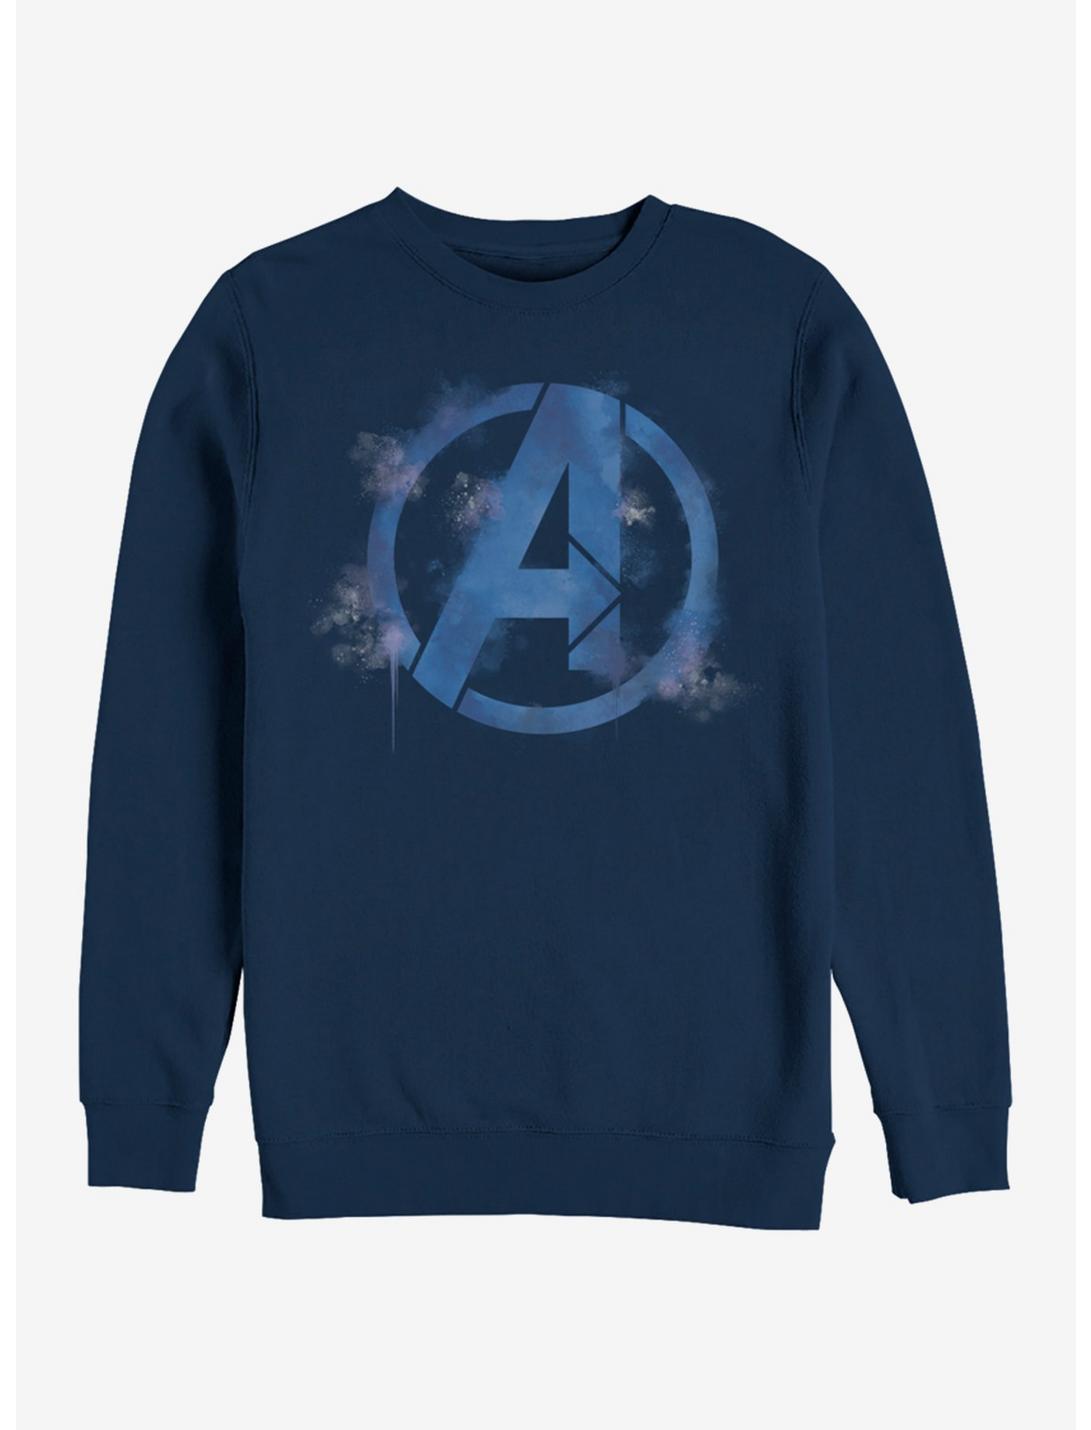 Marvel Avengers: Endgame Avengers Spray Logo Navy Blue Sweatshirt, NAVY, hi-res